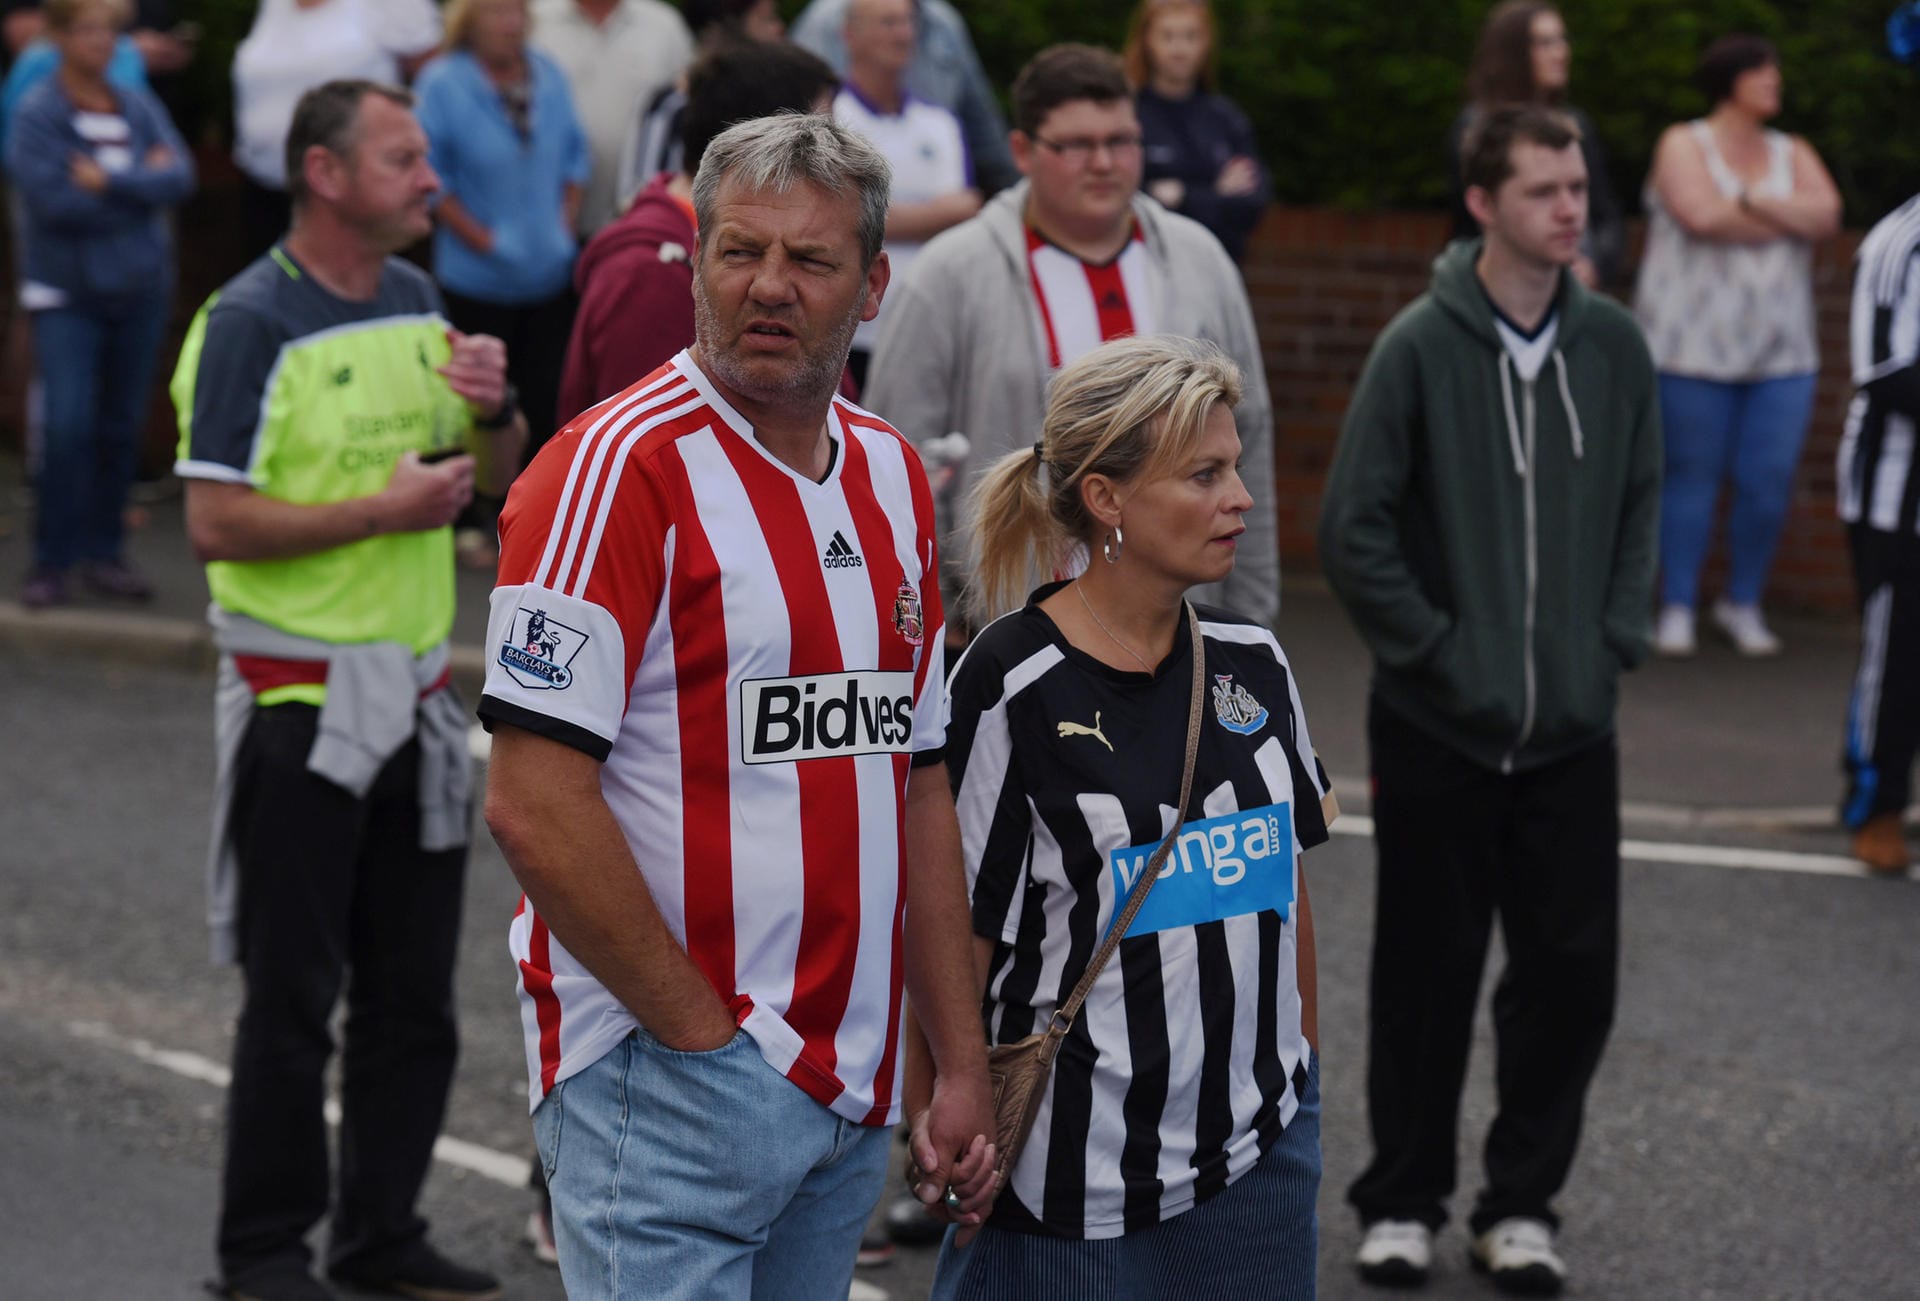 Zwischen dem FC Sunderland und Newcastle United herrscht eigentlich eine leidenschaftliche Feindschaft, die teils groteske Züge annahm. Doch das Schicksal des Sunderland-Fans berührte auch die Anhänger des Erzrivalen, die Lowery zahlreiche Fangesänge widmeten und ihm zur Beerdigung die letzte Ehre erwiesen.